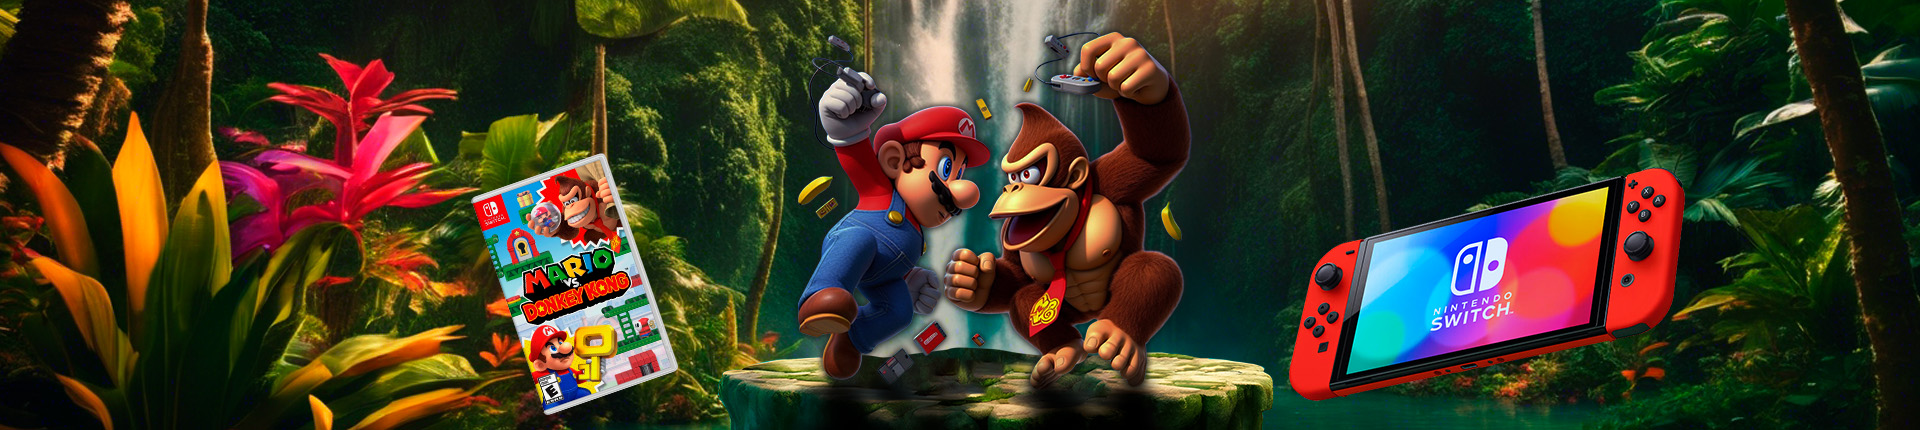 Mario vs Kong